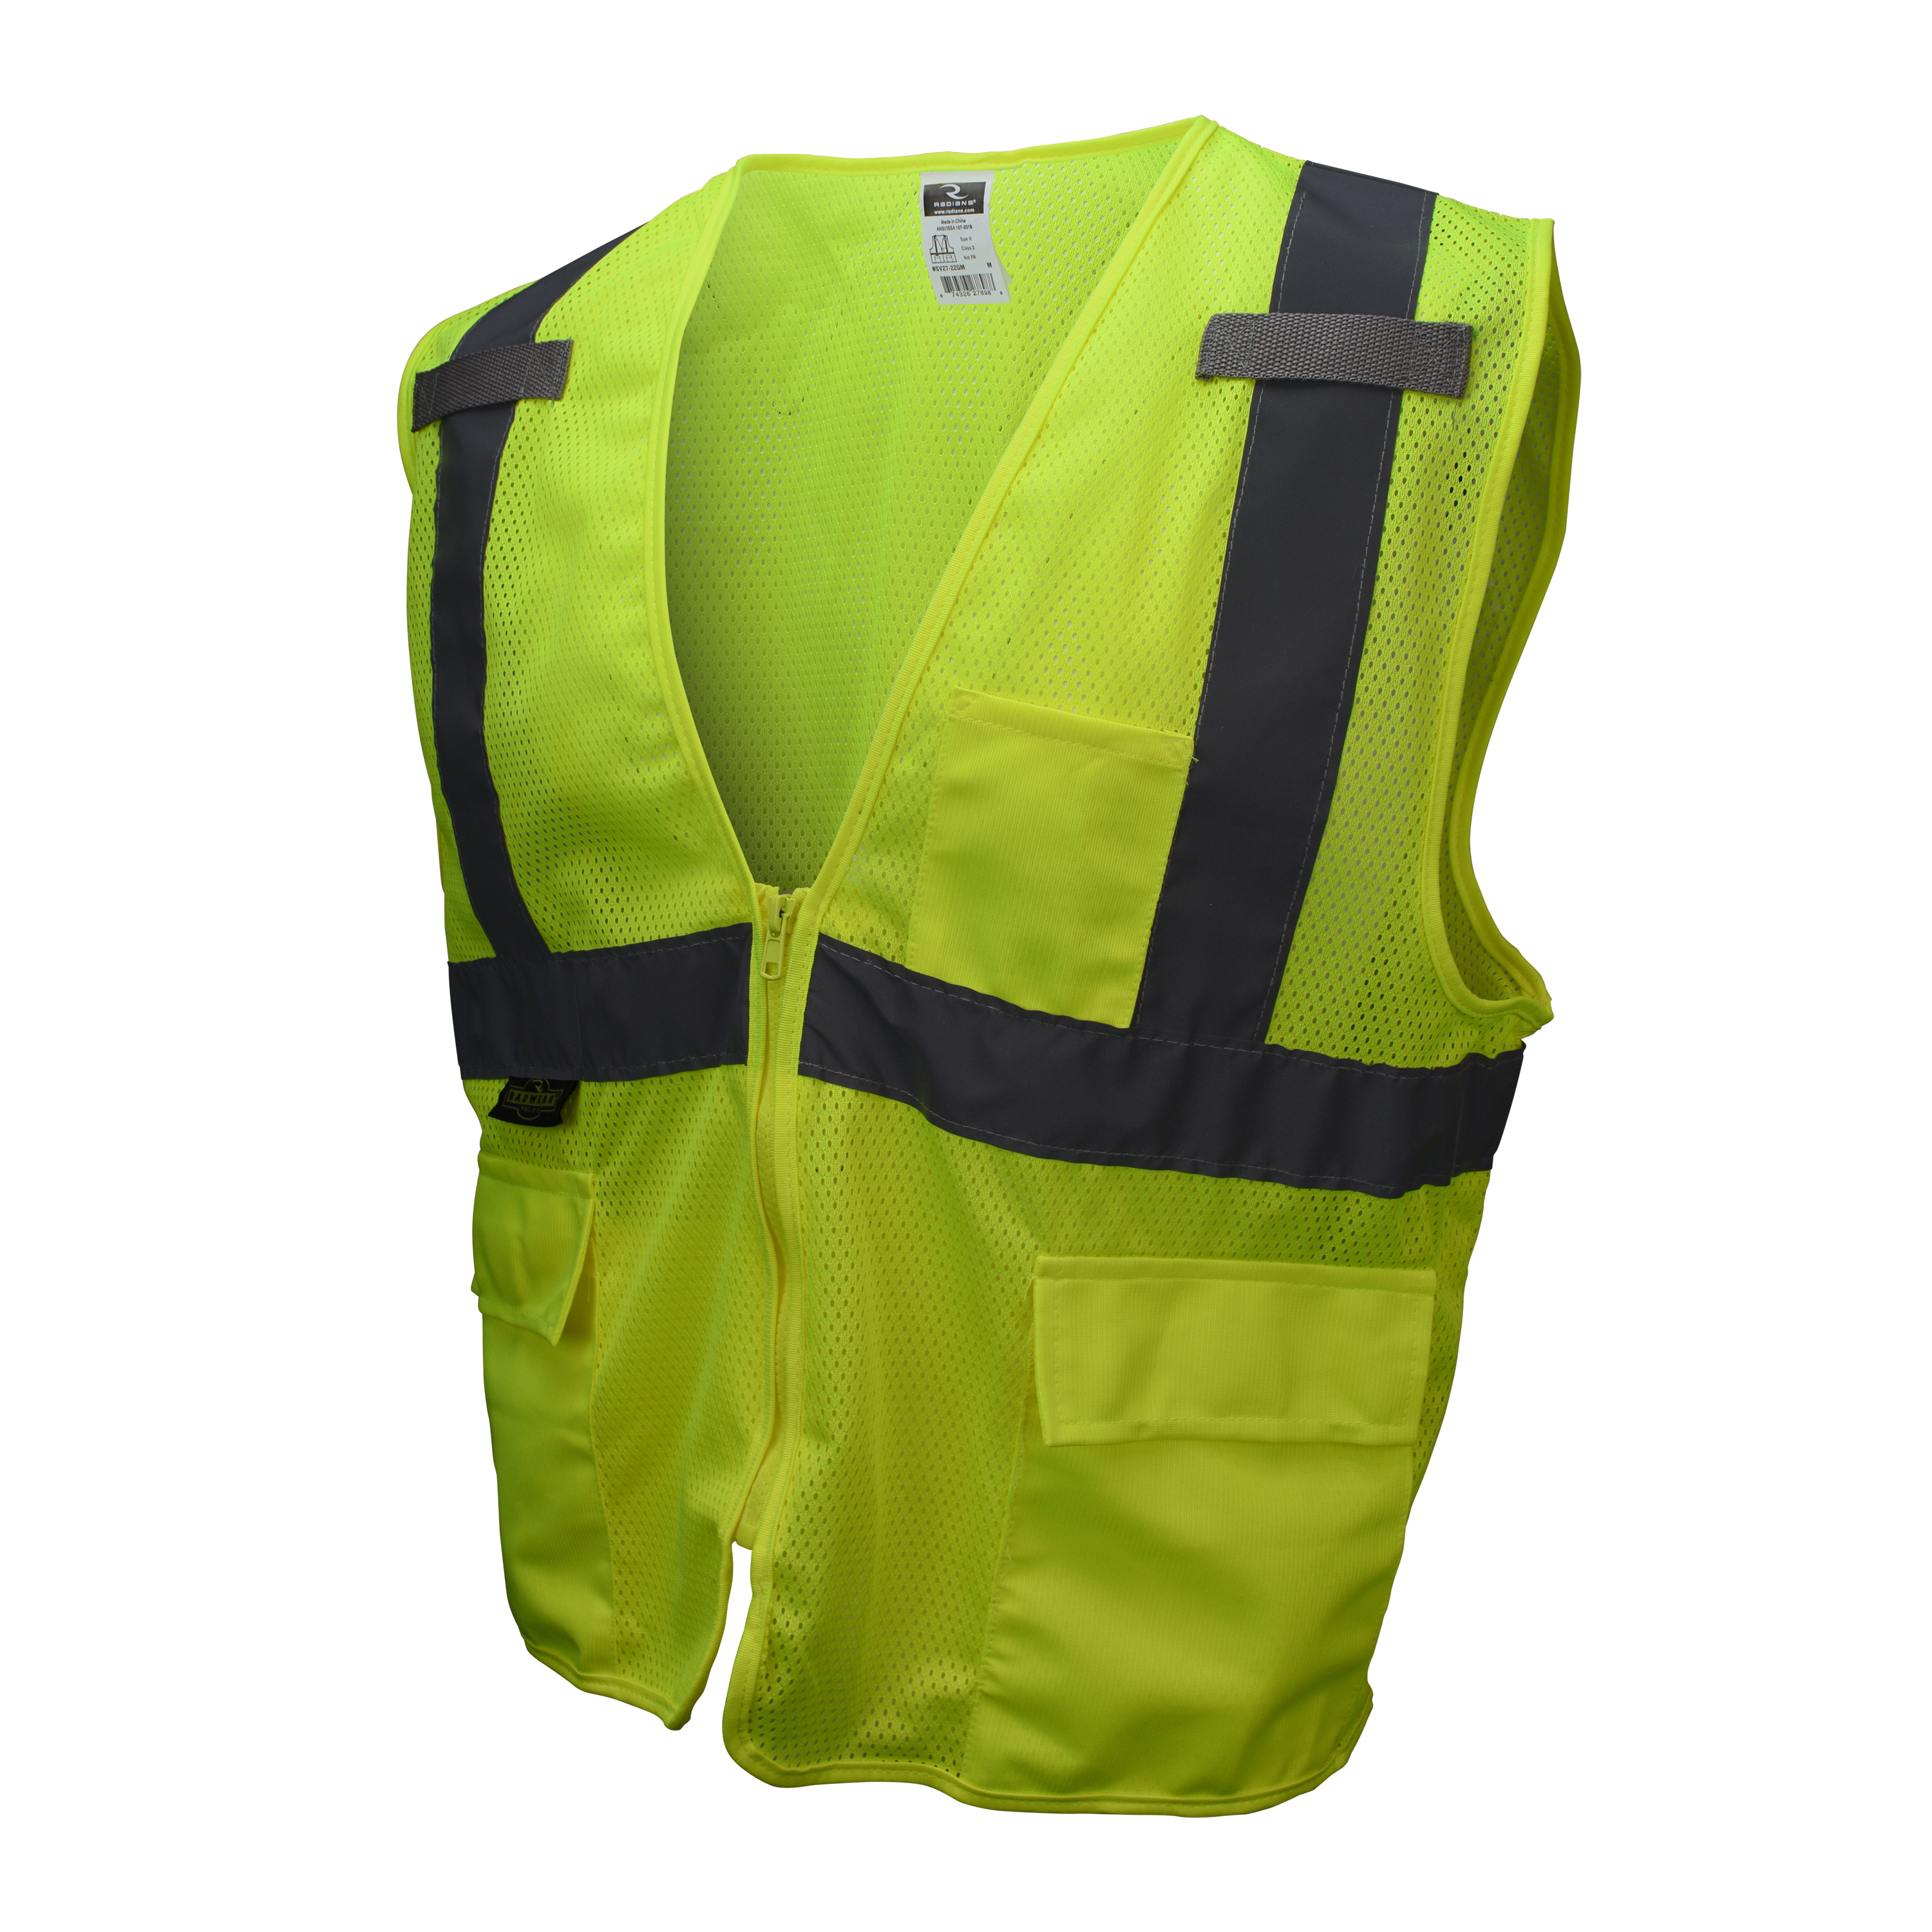 SV27 Multipurpose Surveyor Type R Class 2 Mesh Safety Vest - Green - Size 2X - Safety Vests